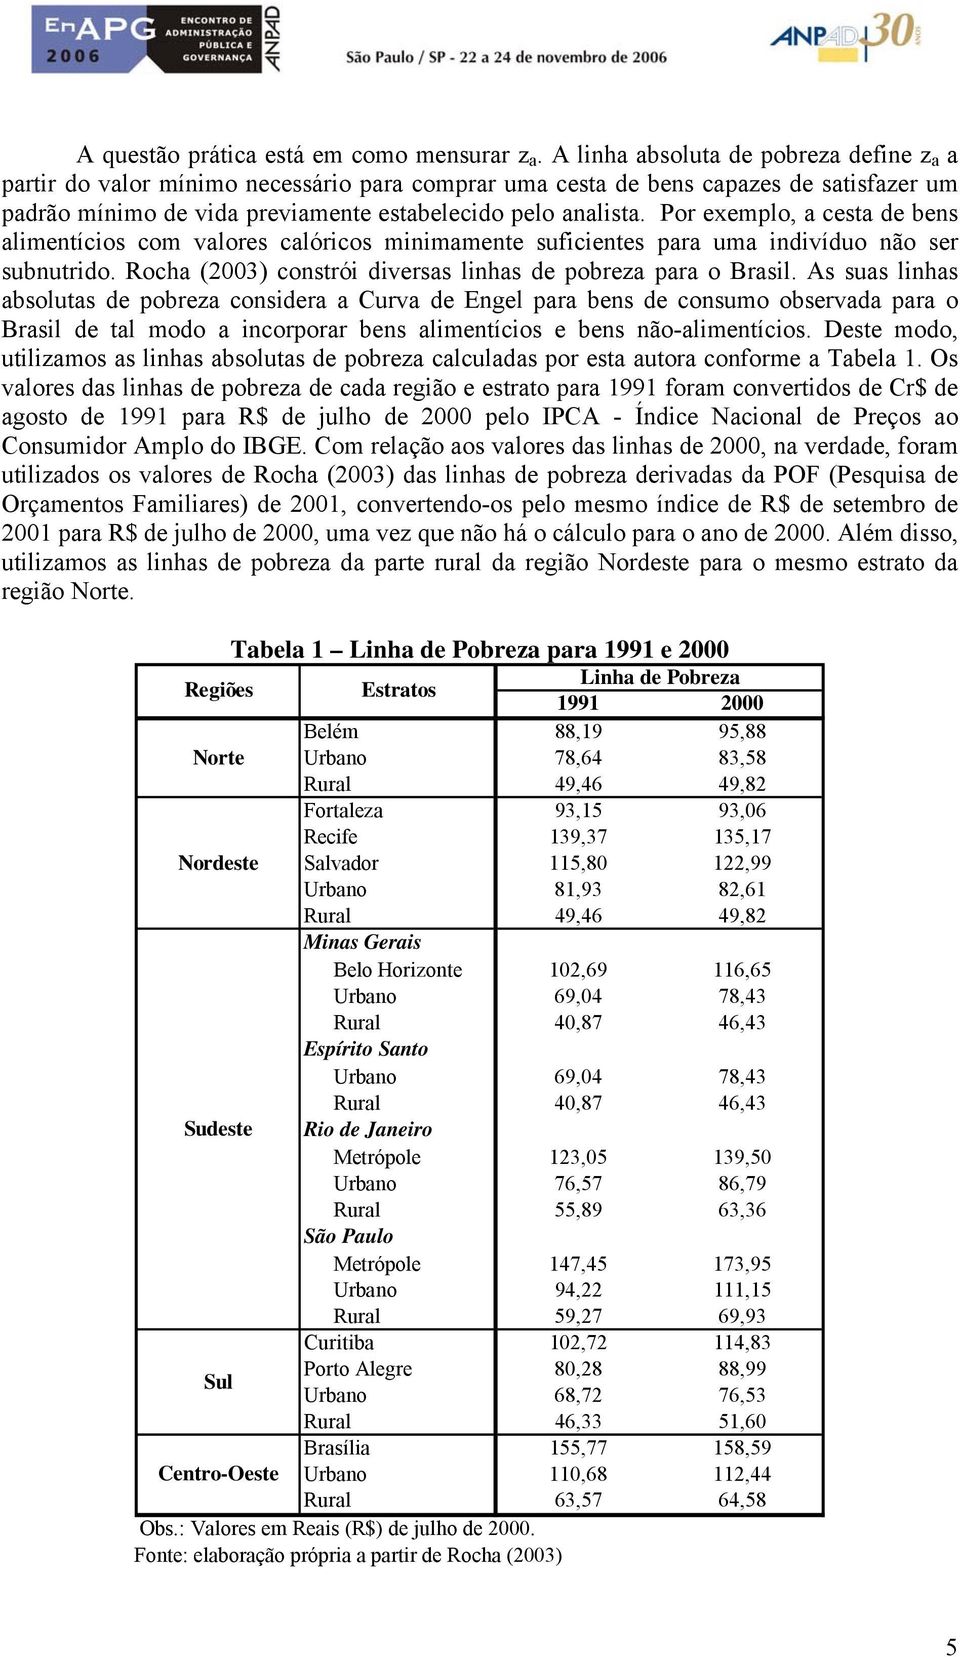 Por exemplo, a cesa de bens alimenícios com valores calóricos minimamene suficienes para uma indivíduo não ser subnurido. Rocha (2003) consrói diversas linhas de pobreza para o Brasil.